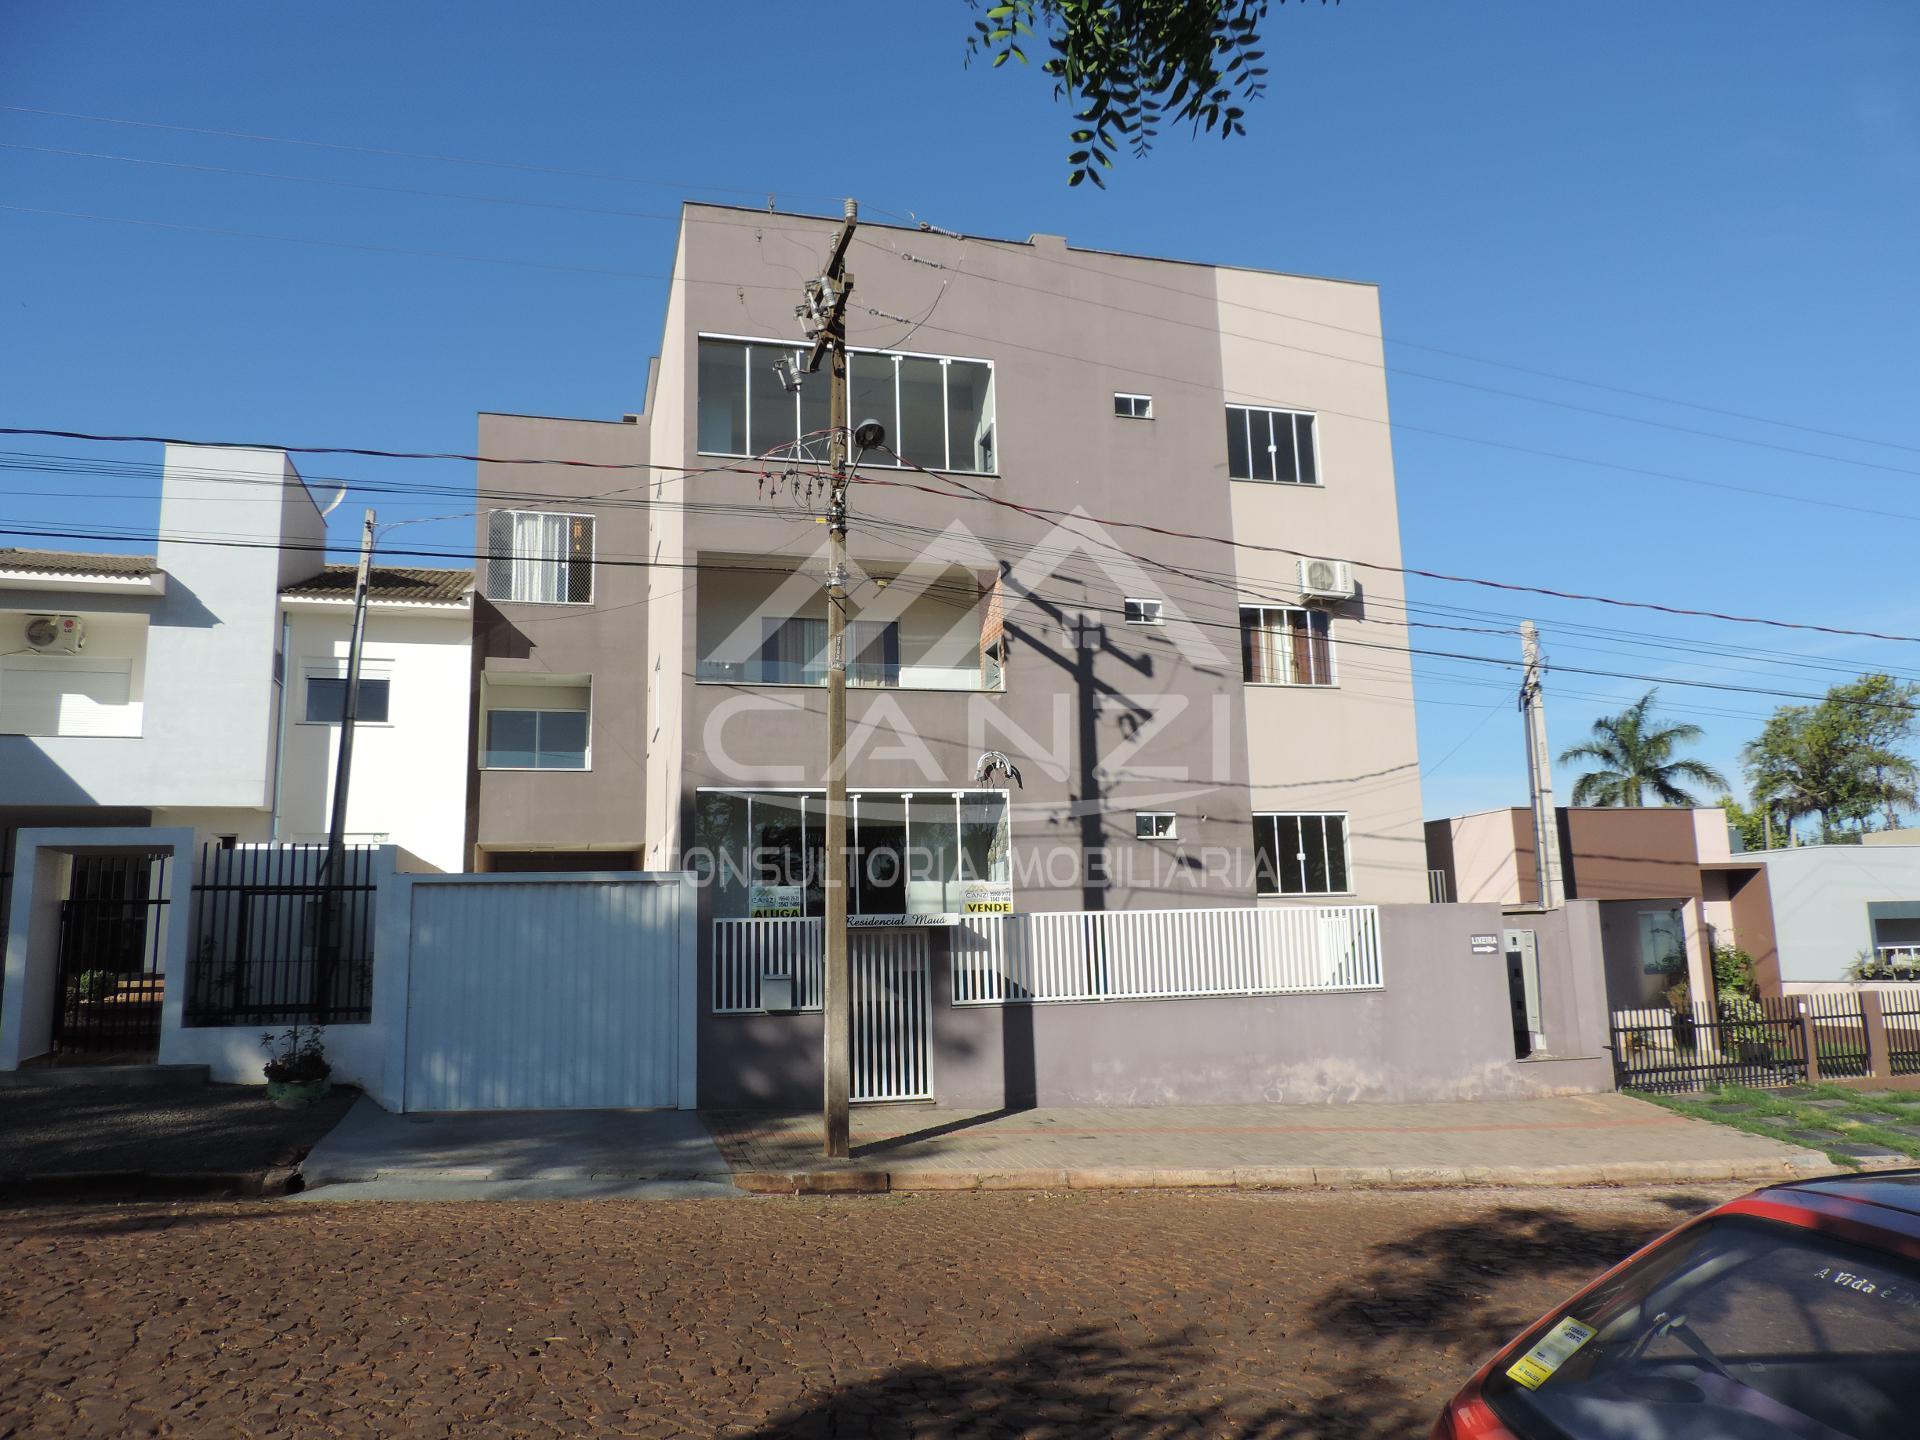 Apartamento para venda localizado no Edifício Mauá, bairro São José